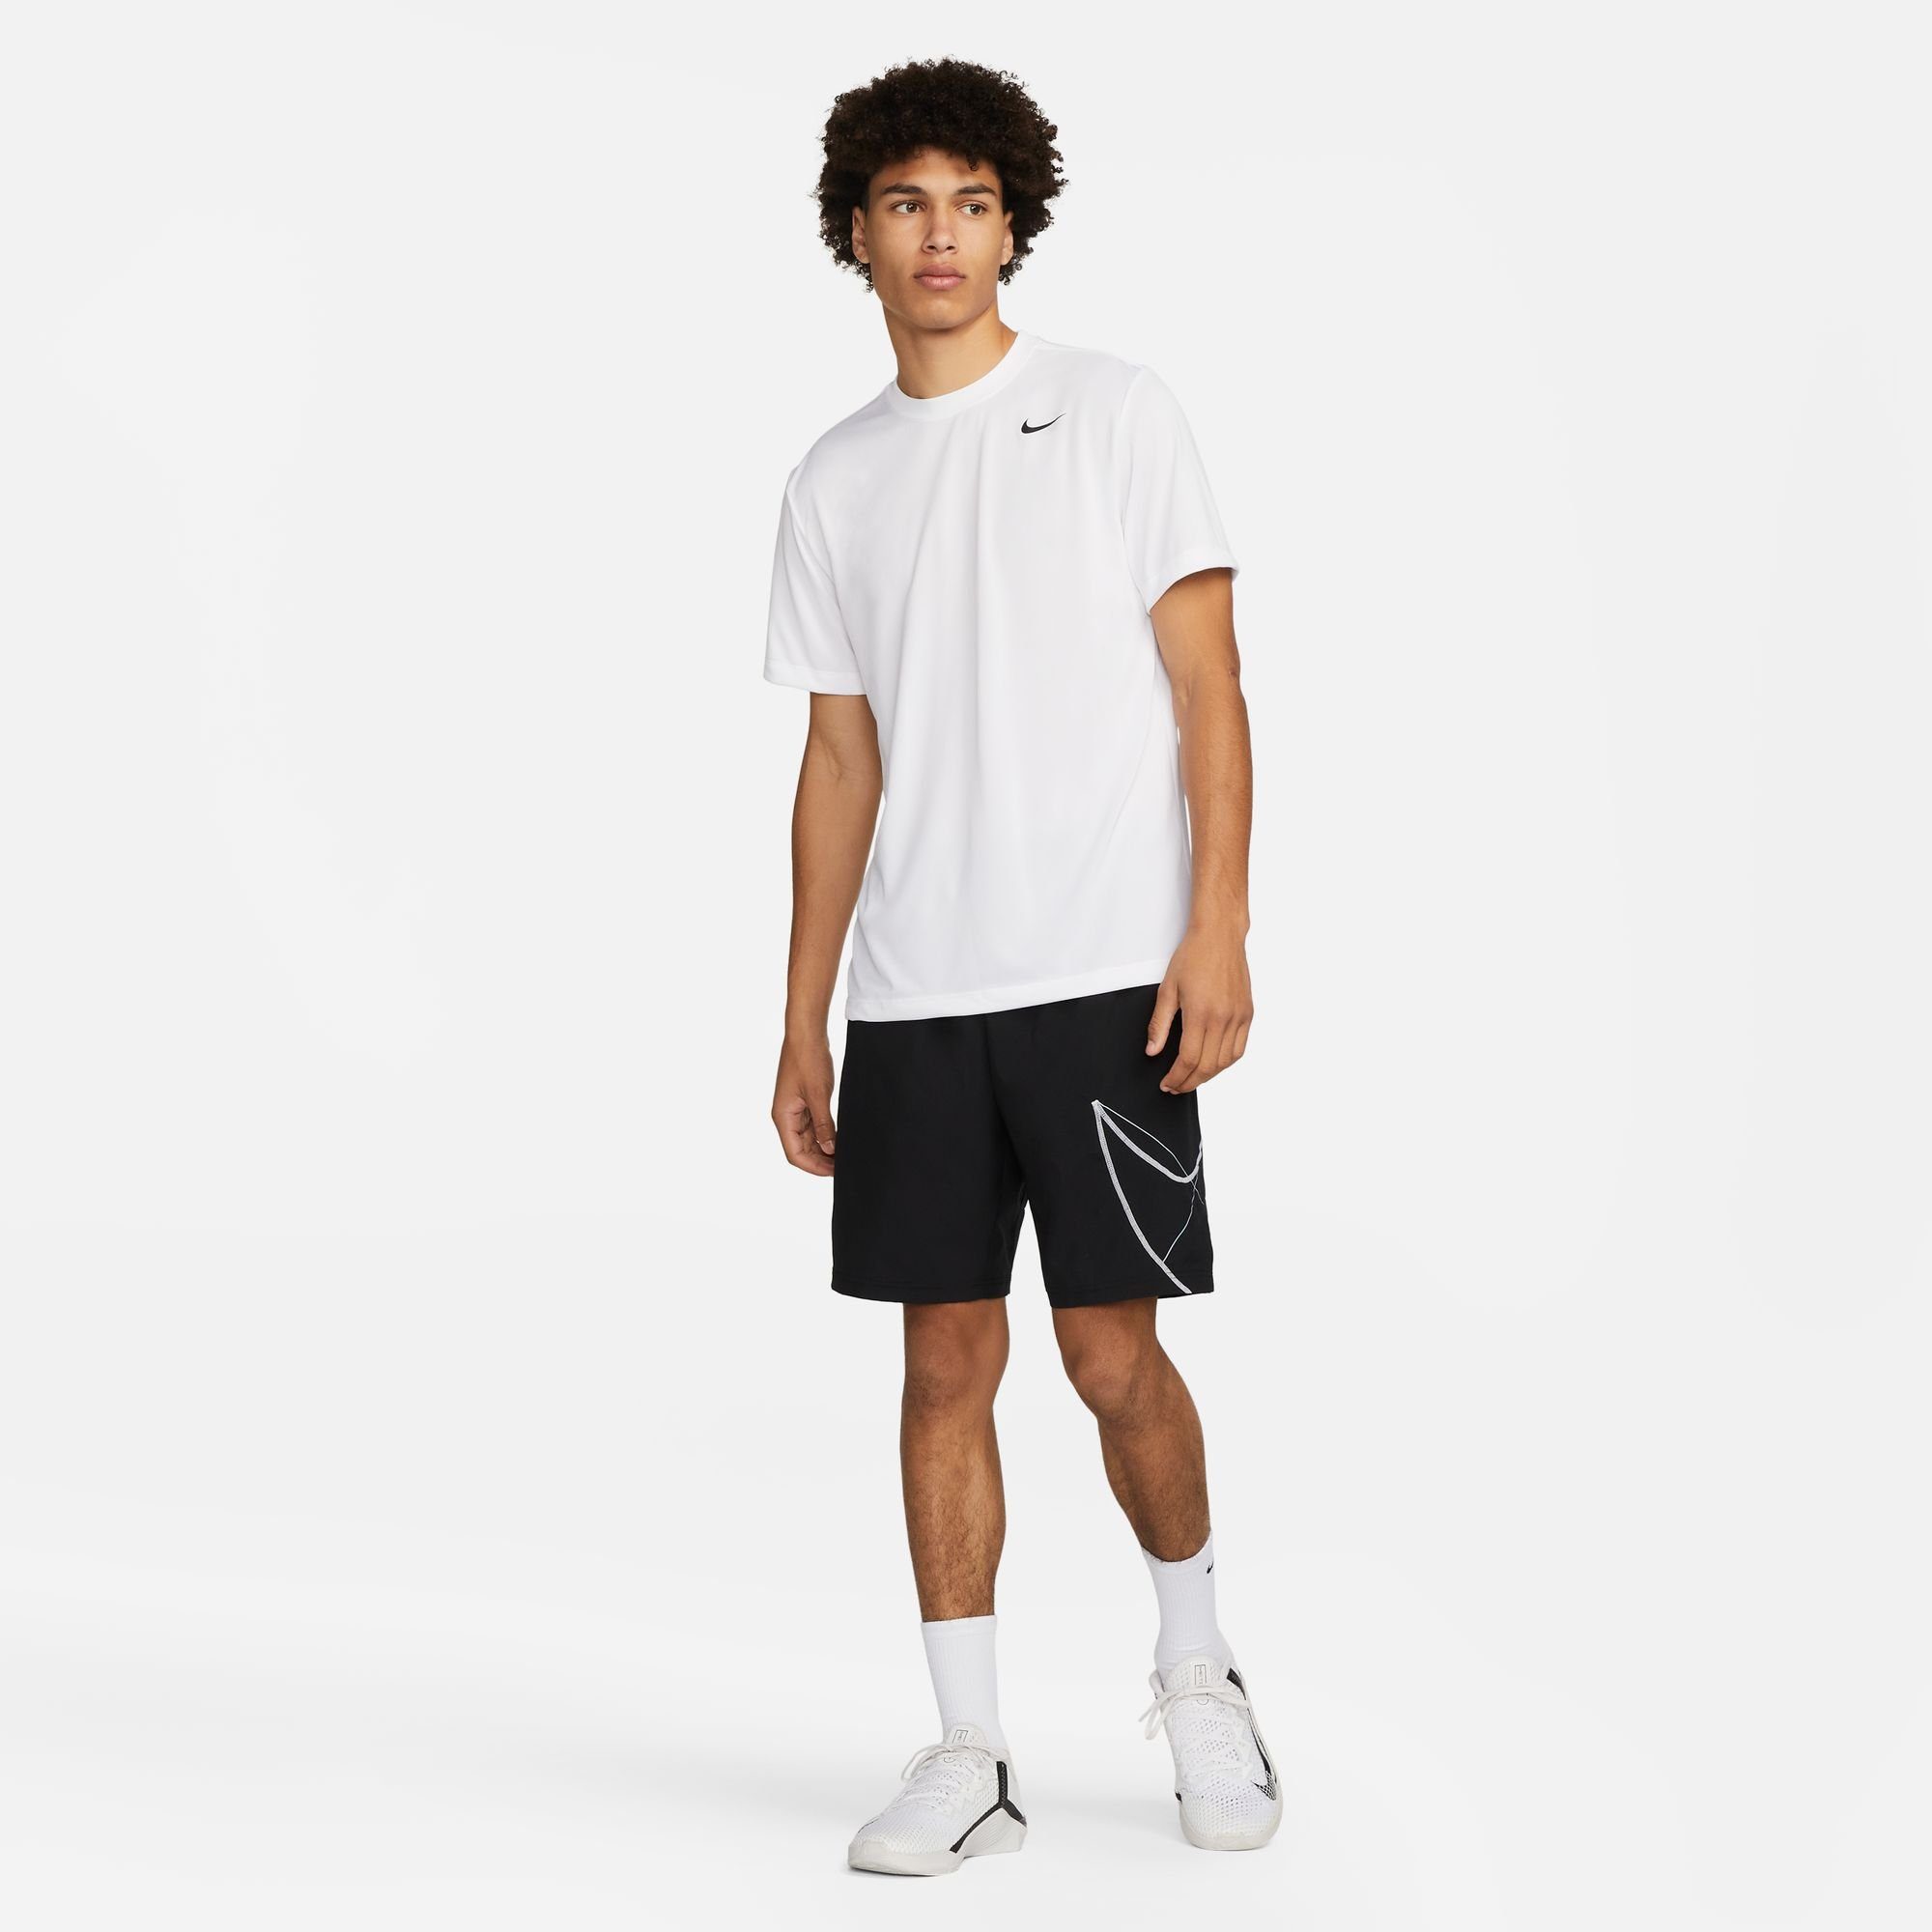 Nike Trainingsshirt DRI-FIT WHITE/BLACK MEN'S FITNESS T-SHIRT LEGEND